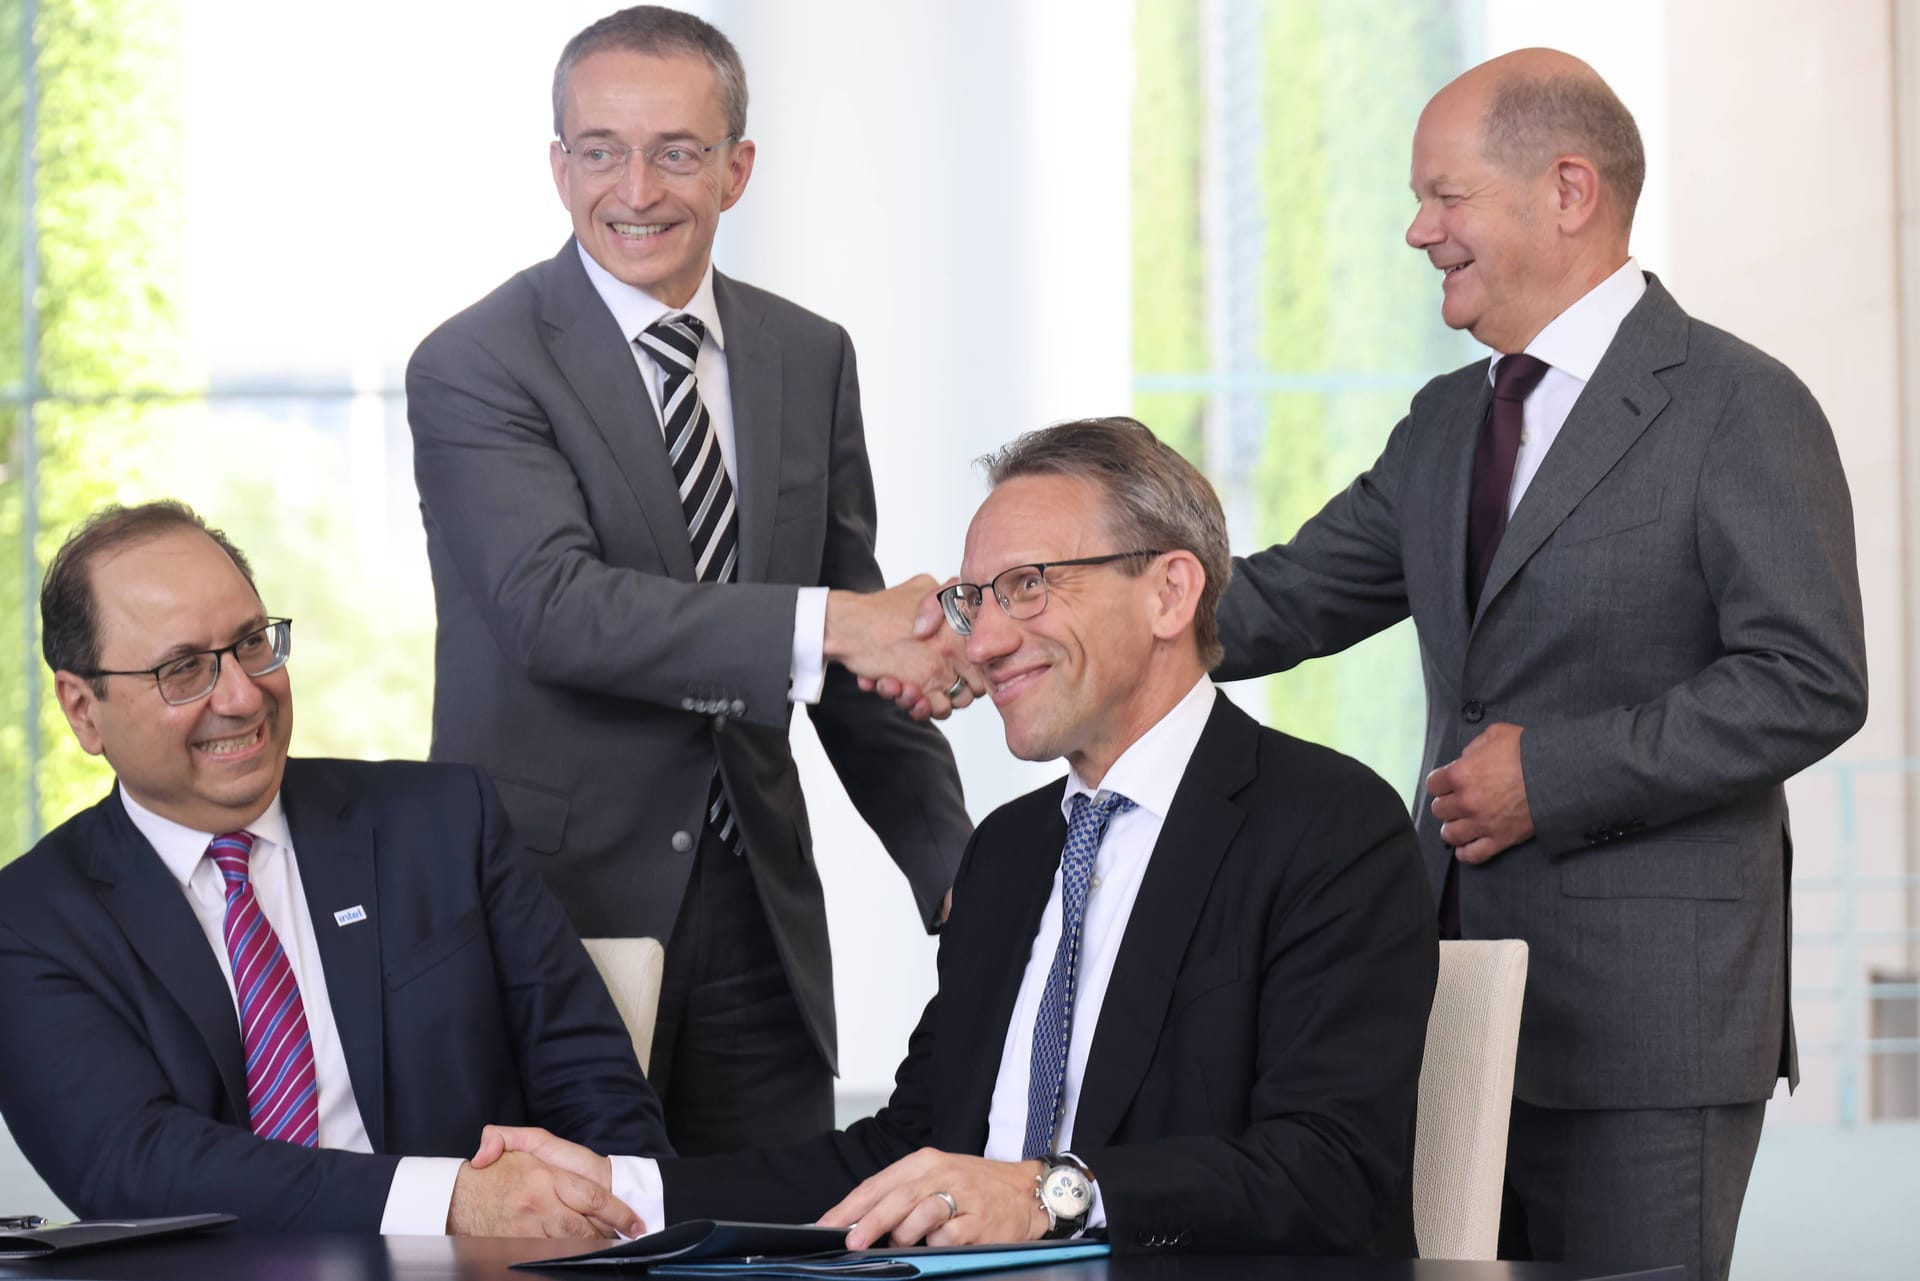 Da war die Freude noch groß: Der Kanzler und Spitzen des Unternehmens Intel bei der Unterzeichnung eines "Letter of intent" für ein Halbleiter-Werk in Magdeburg im Juni 2023.